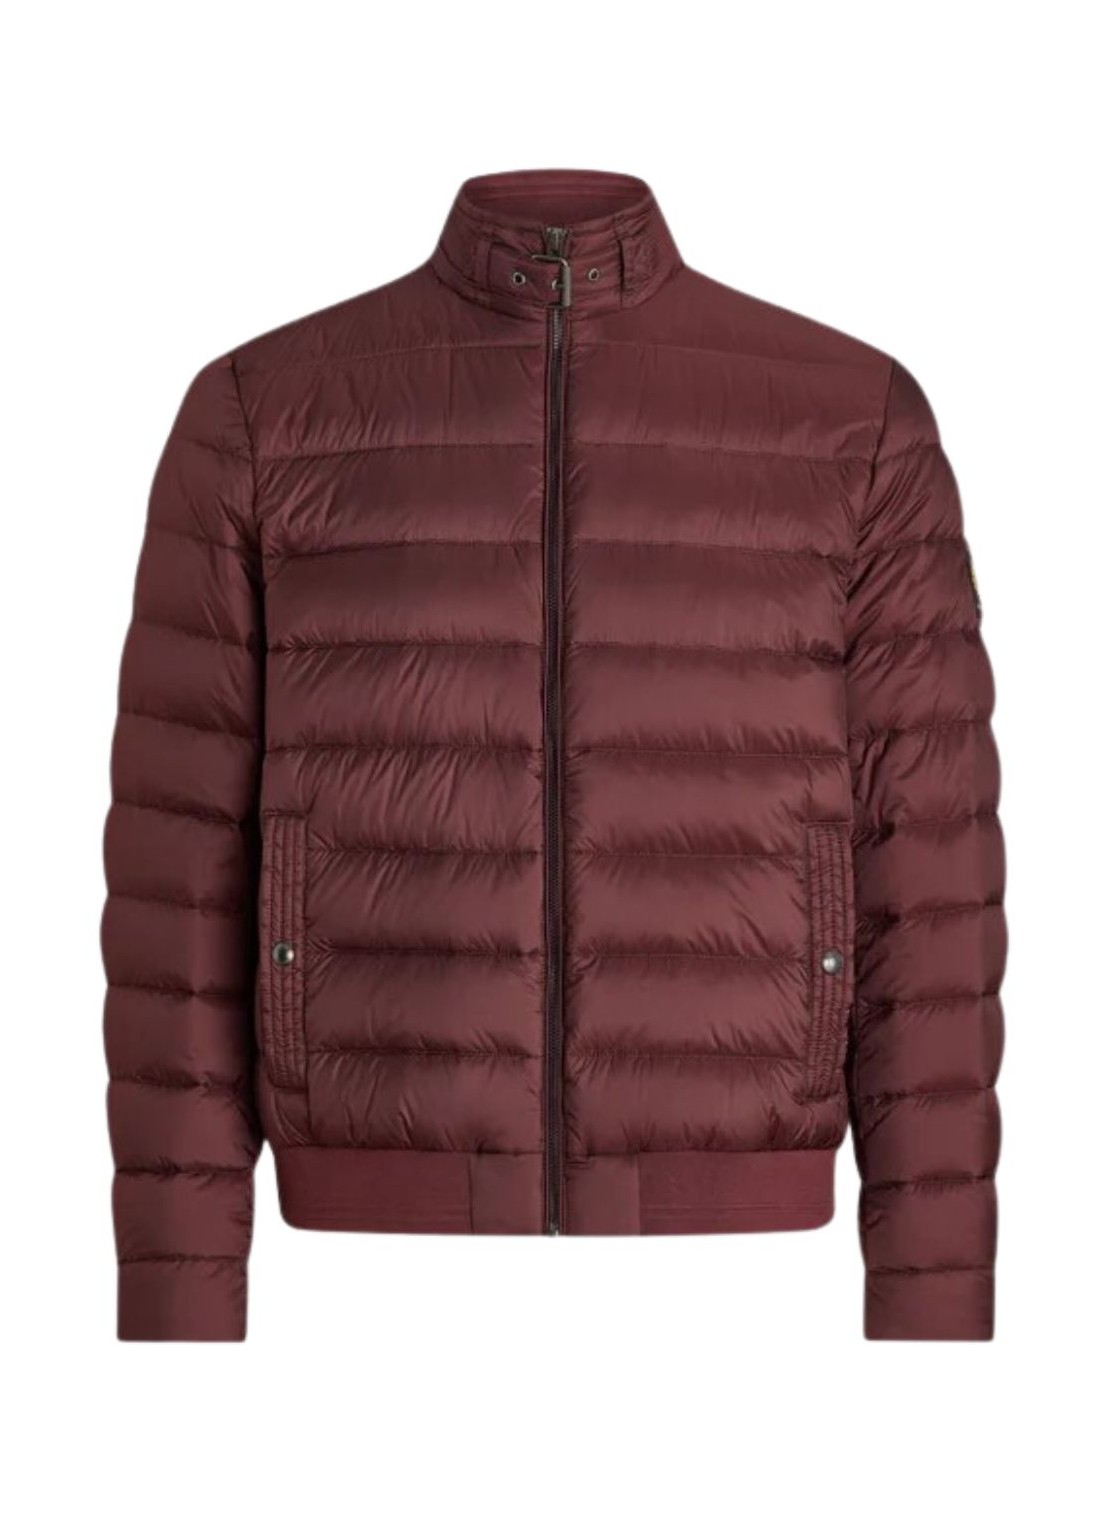 Outerwear belstaff outerwear man circuit jacket 100021 redwd talla 52
 